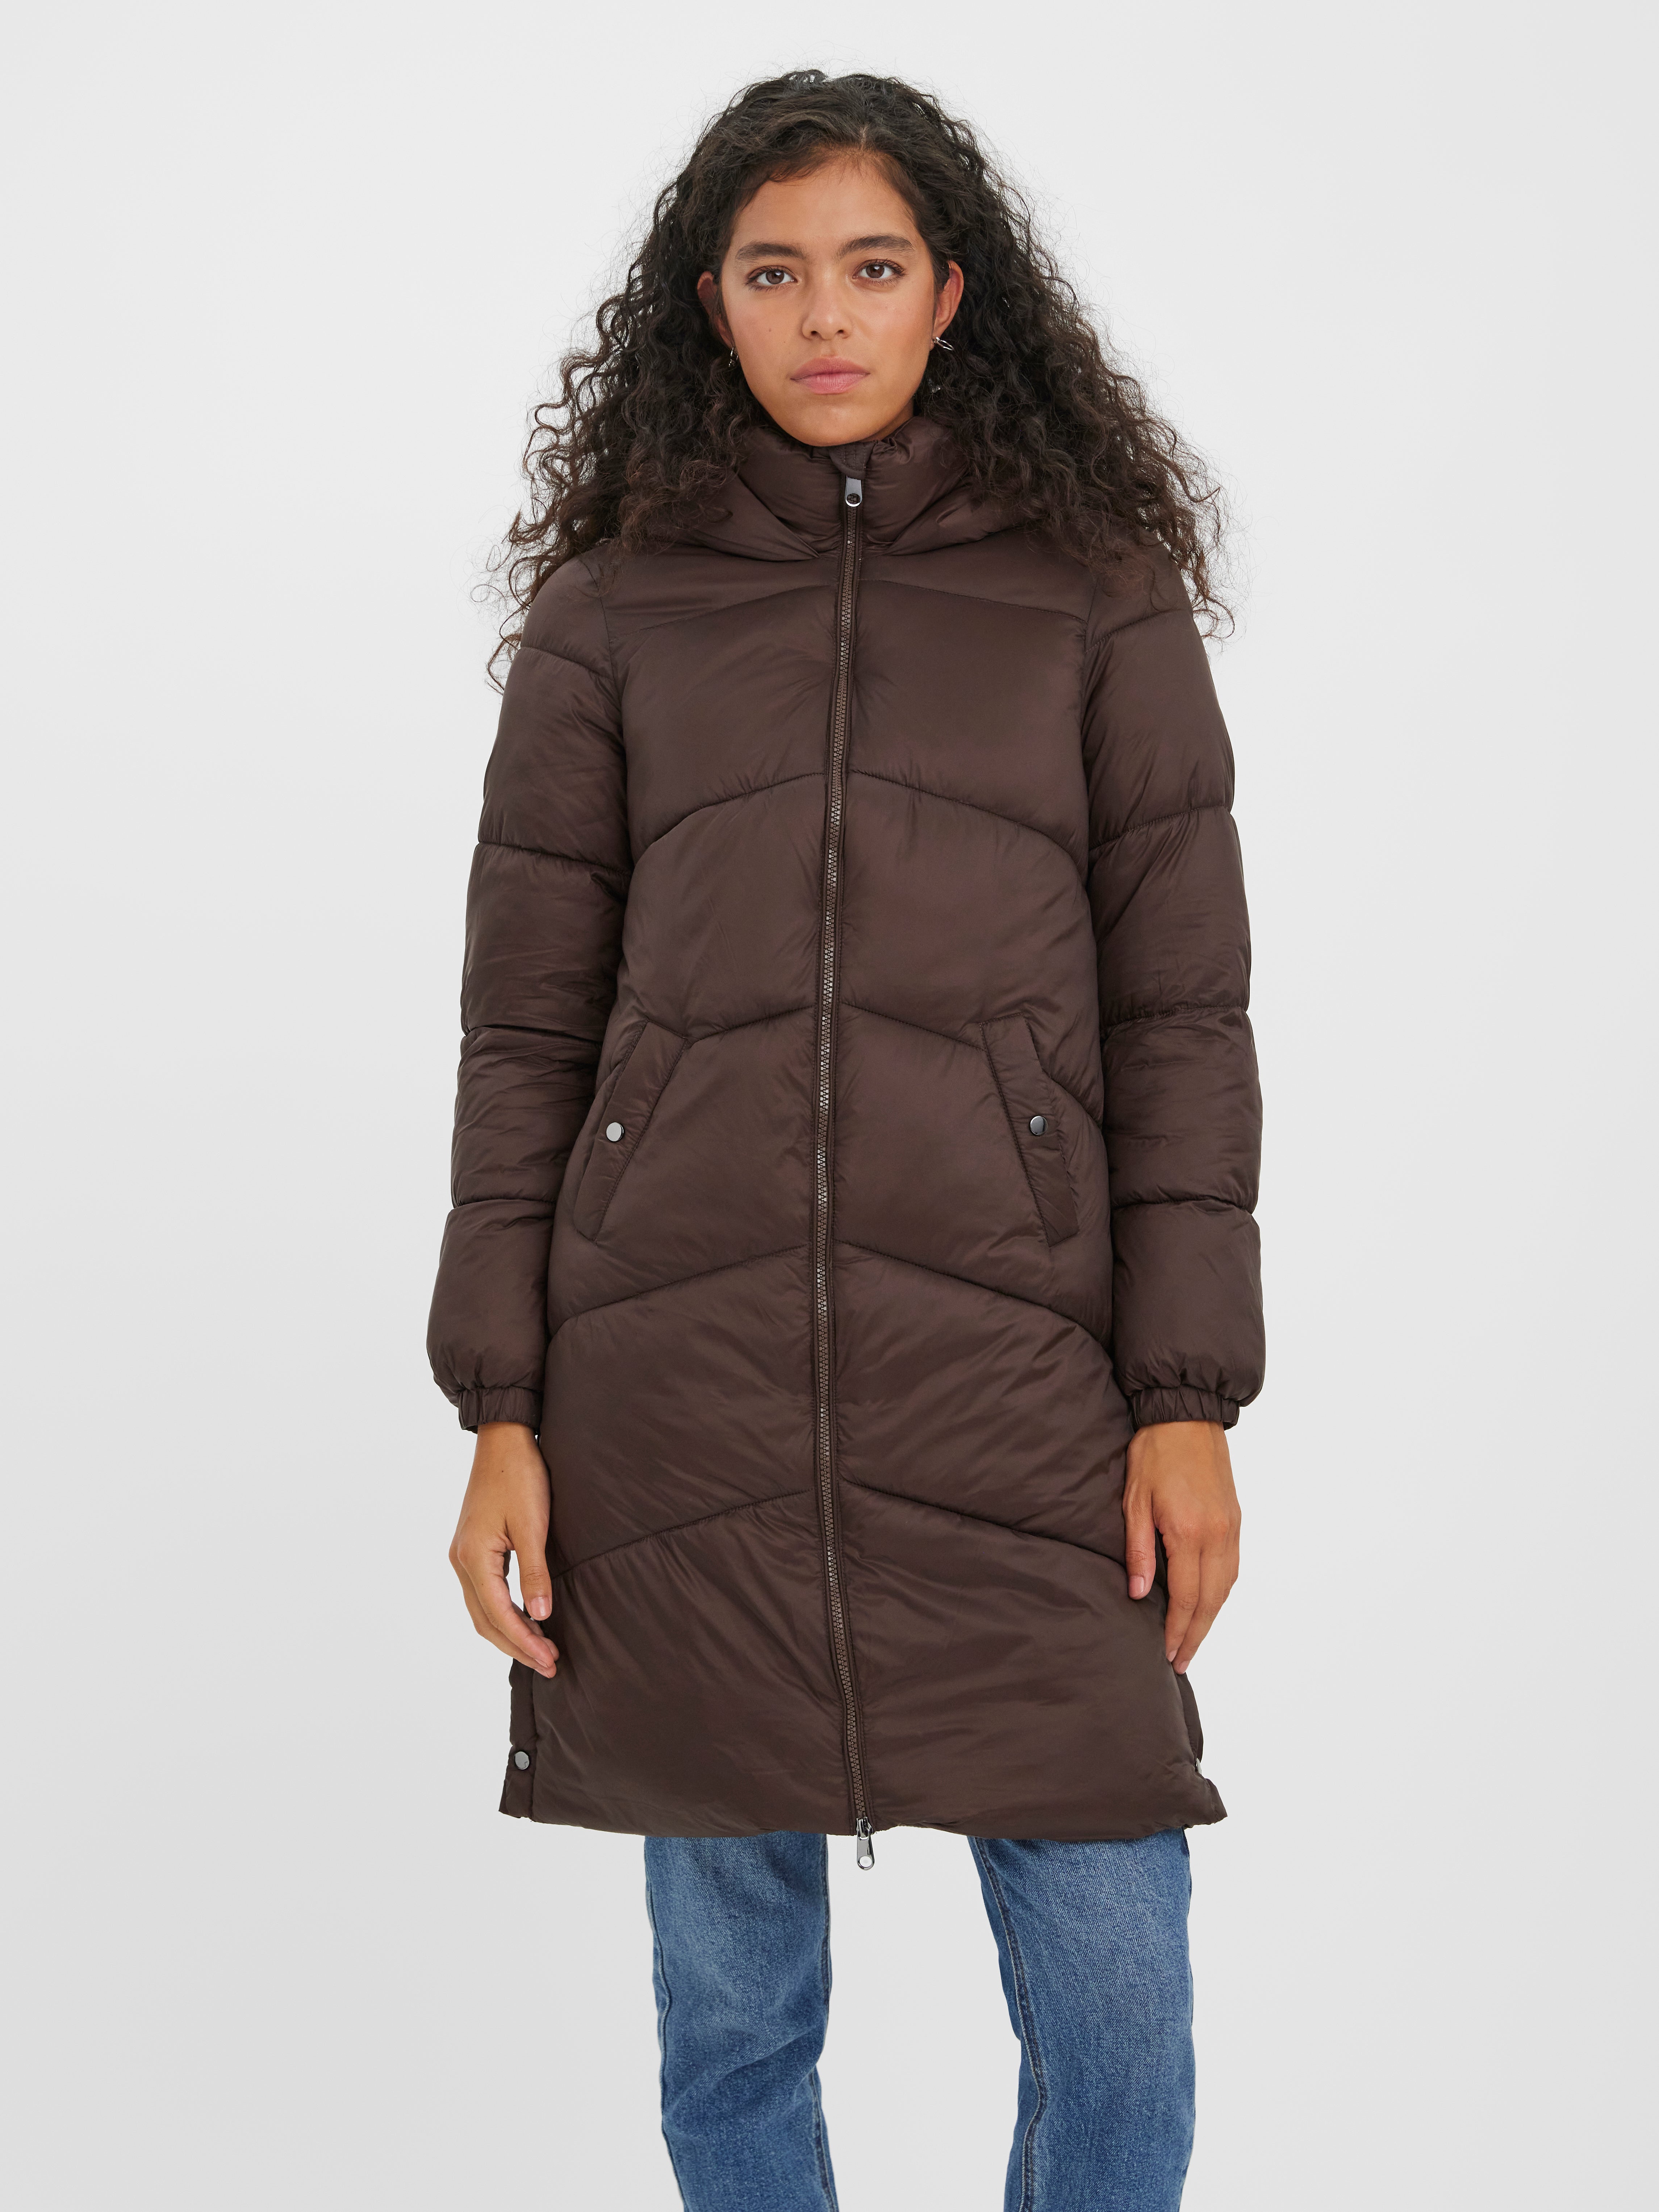 discount 57% Brown M Vero Moda Long coat WOMEN FASHION Coats Long coat Waterproof 